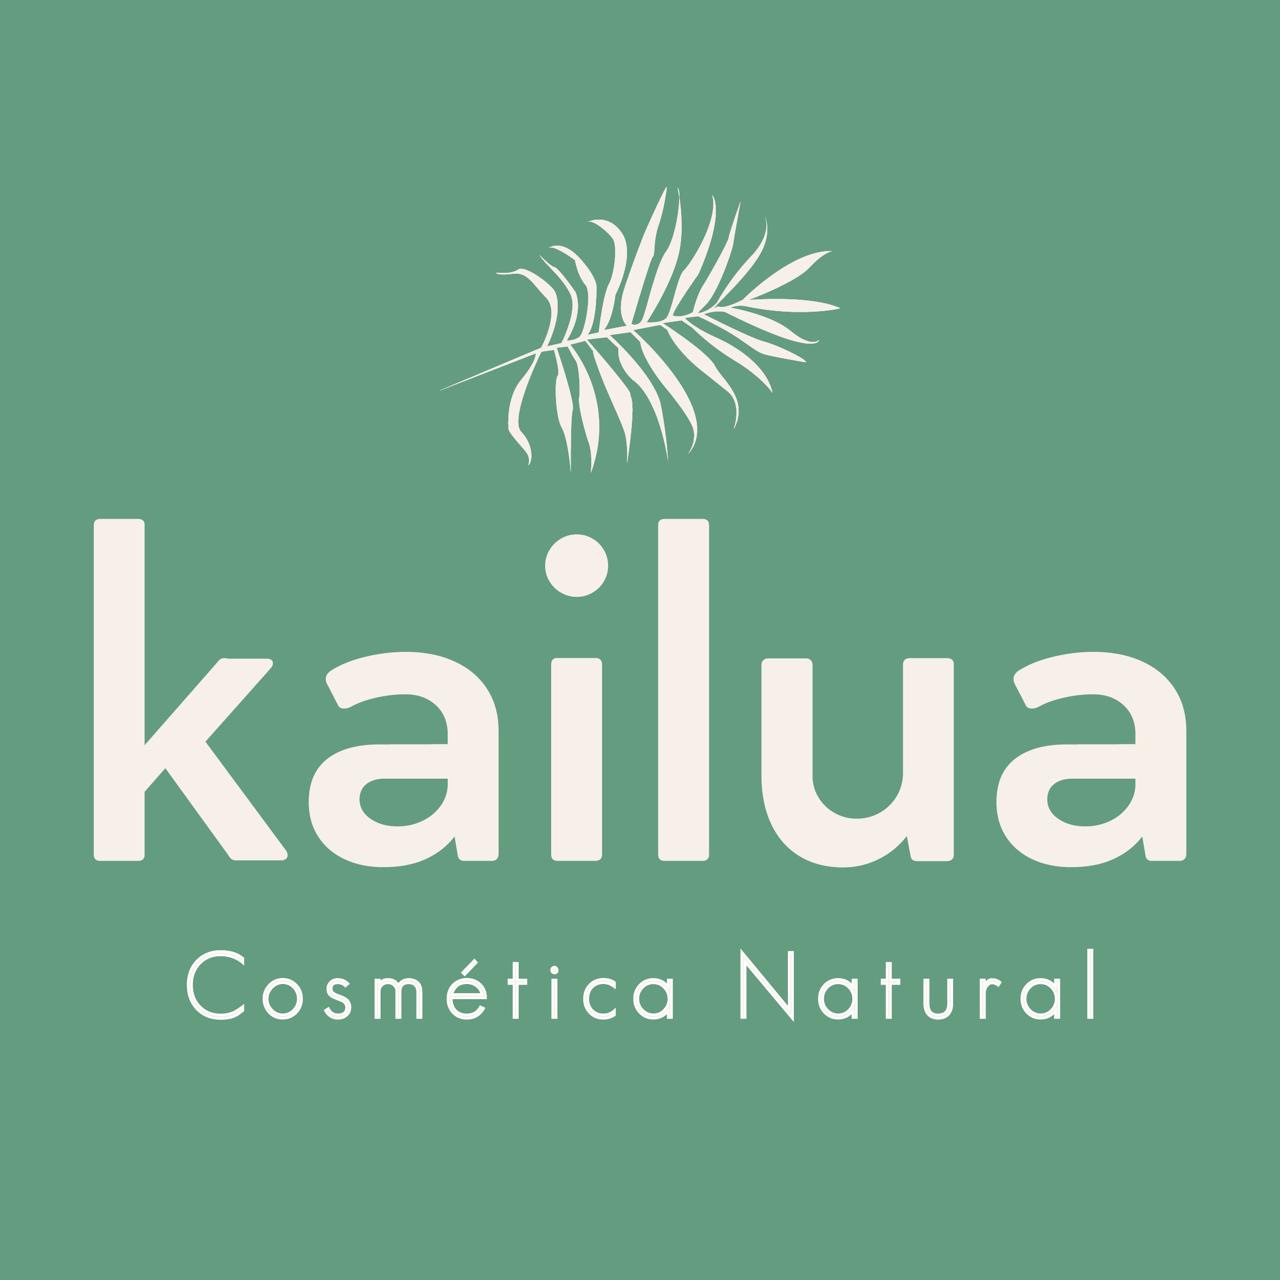 Kailua Cosmetics